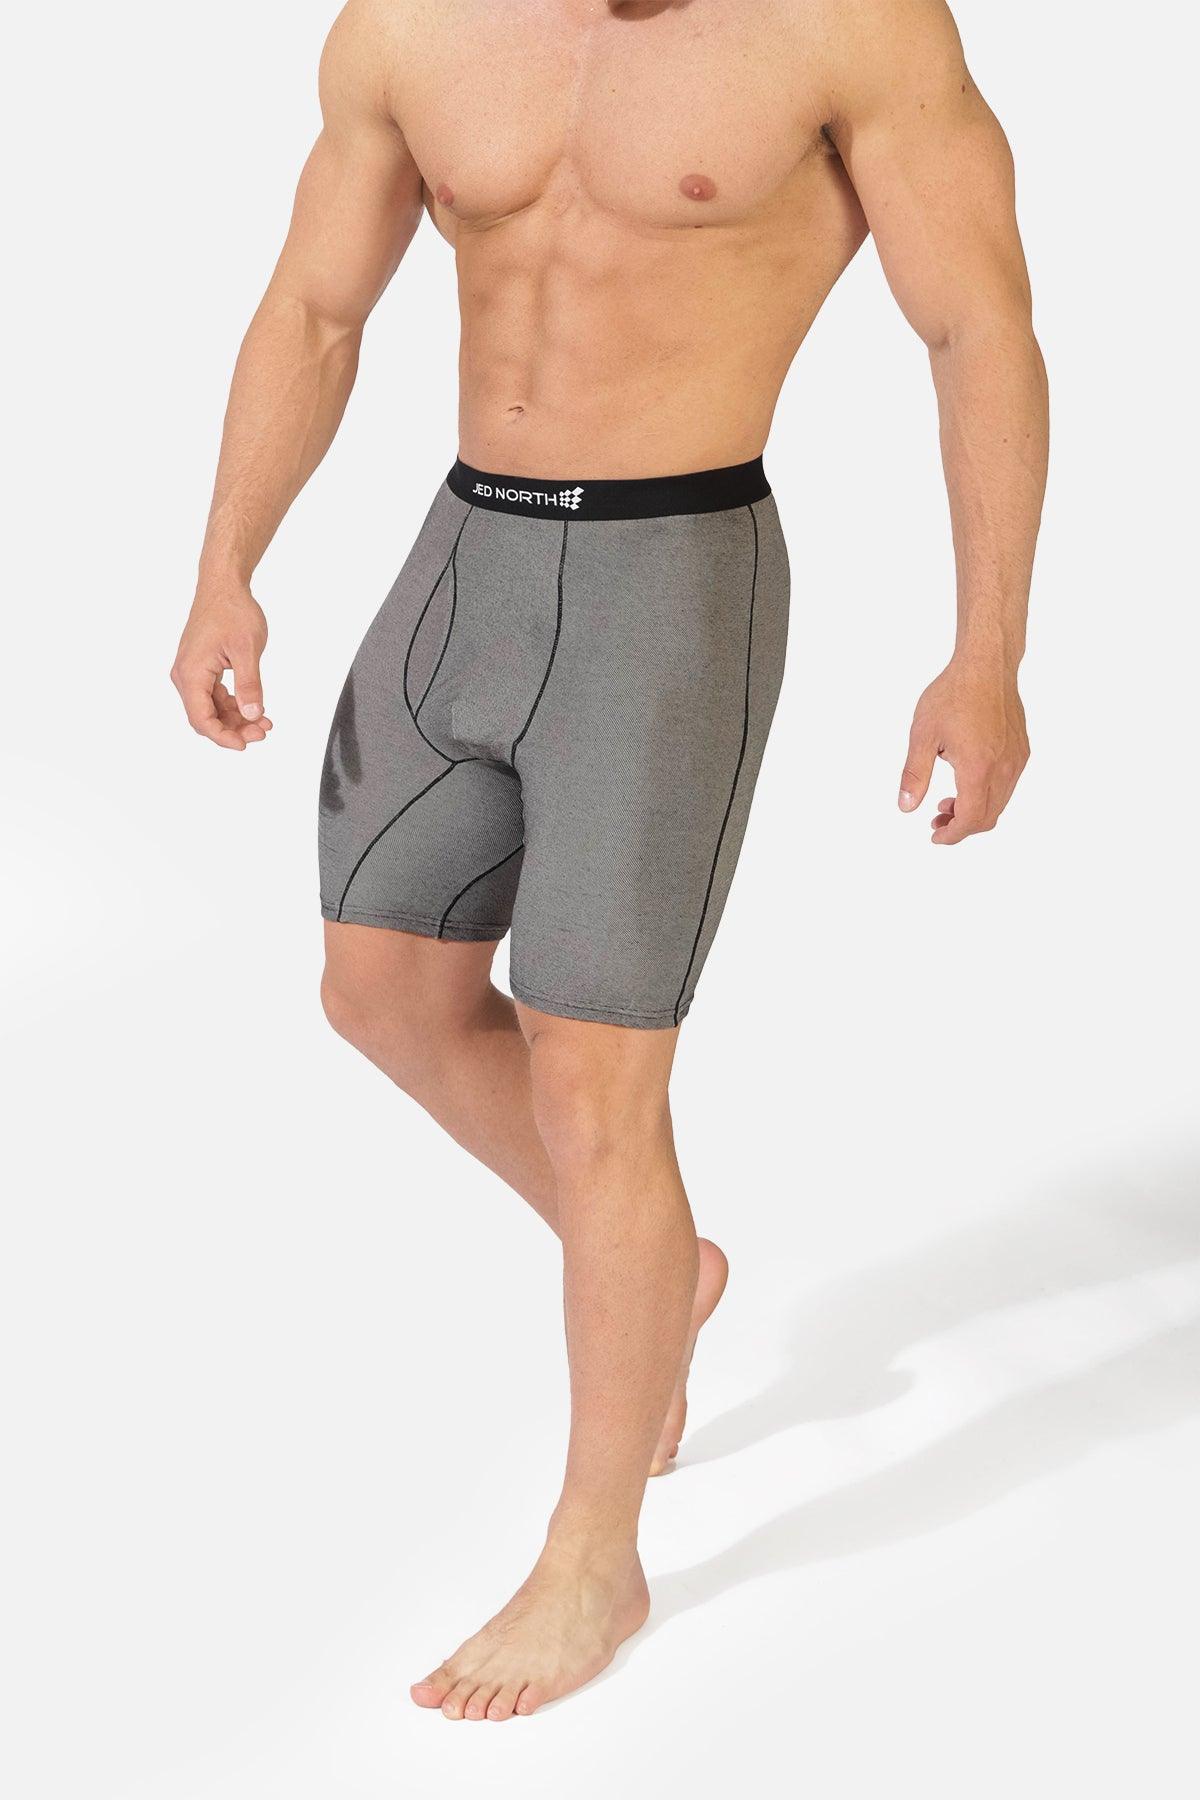 Men'S Underwear Multipack Briefs Classic Cotton Stretch Short Leg  Comfortable Touch Boxer Briefs Underpants